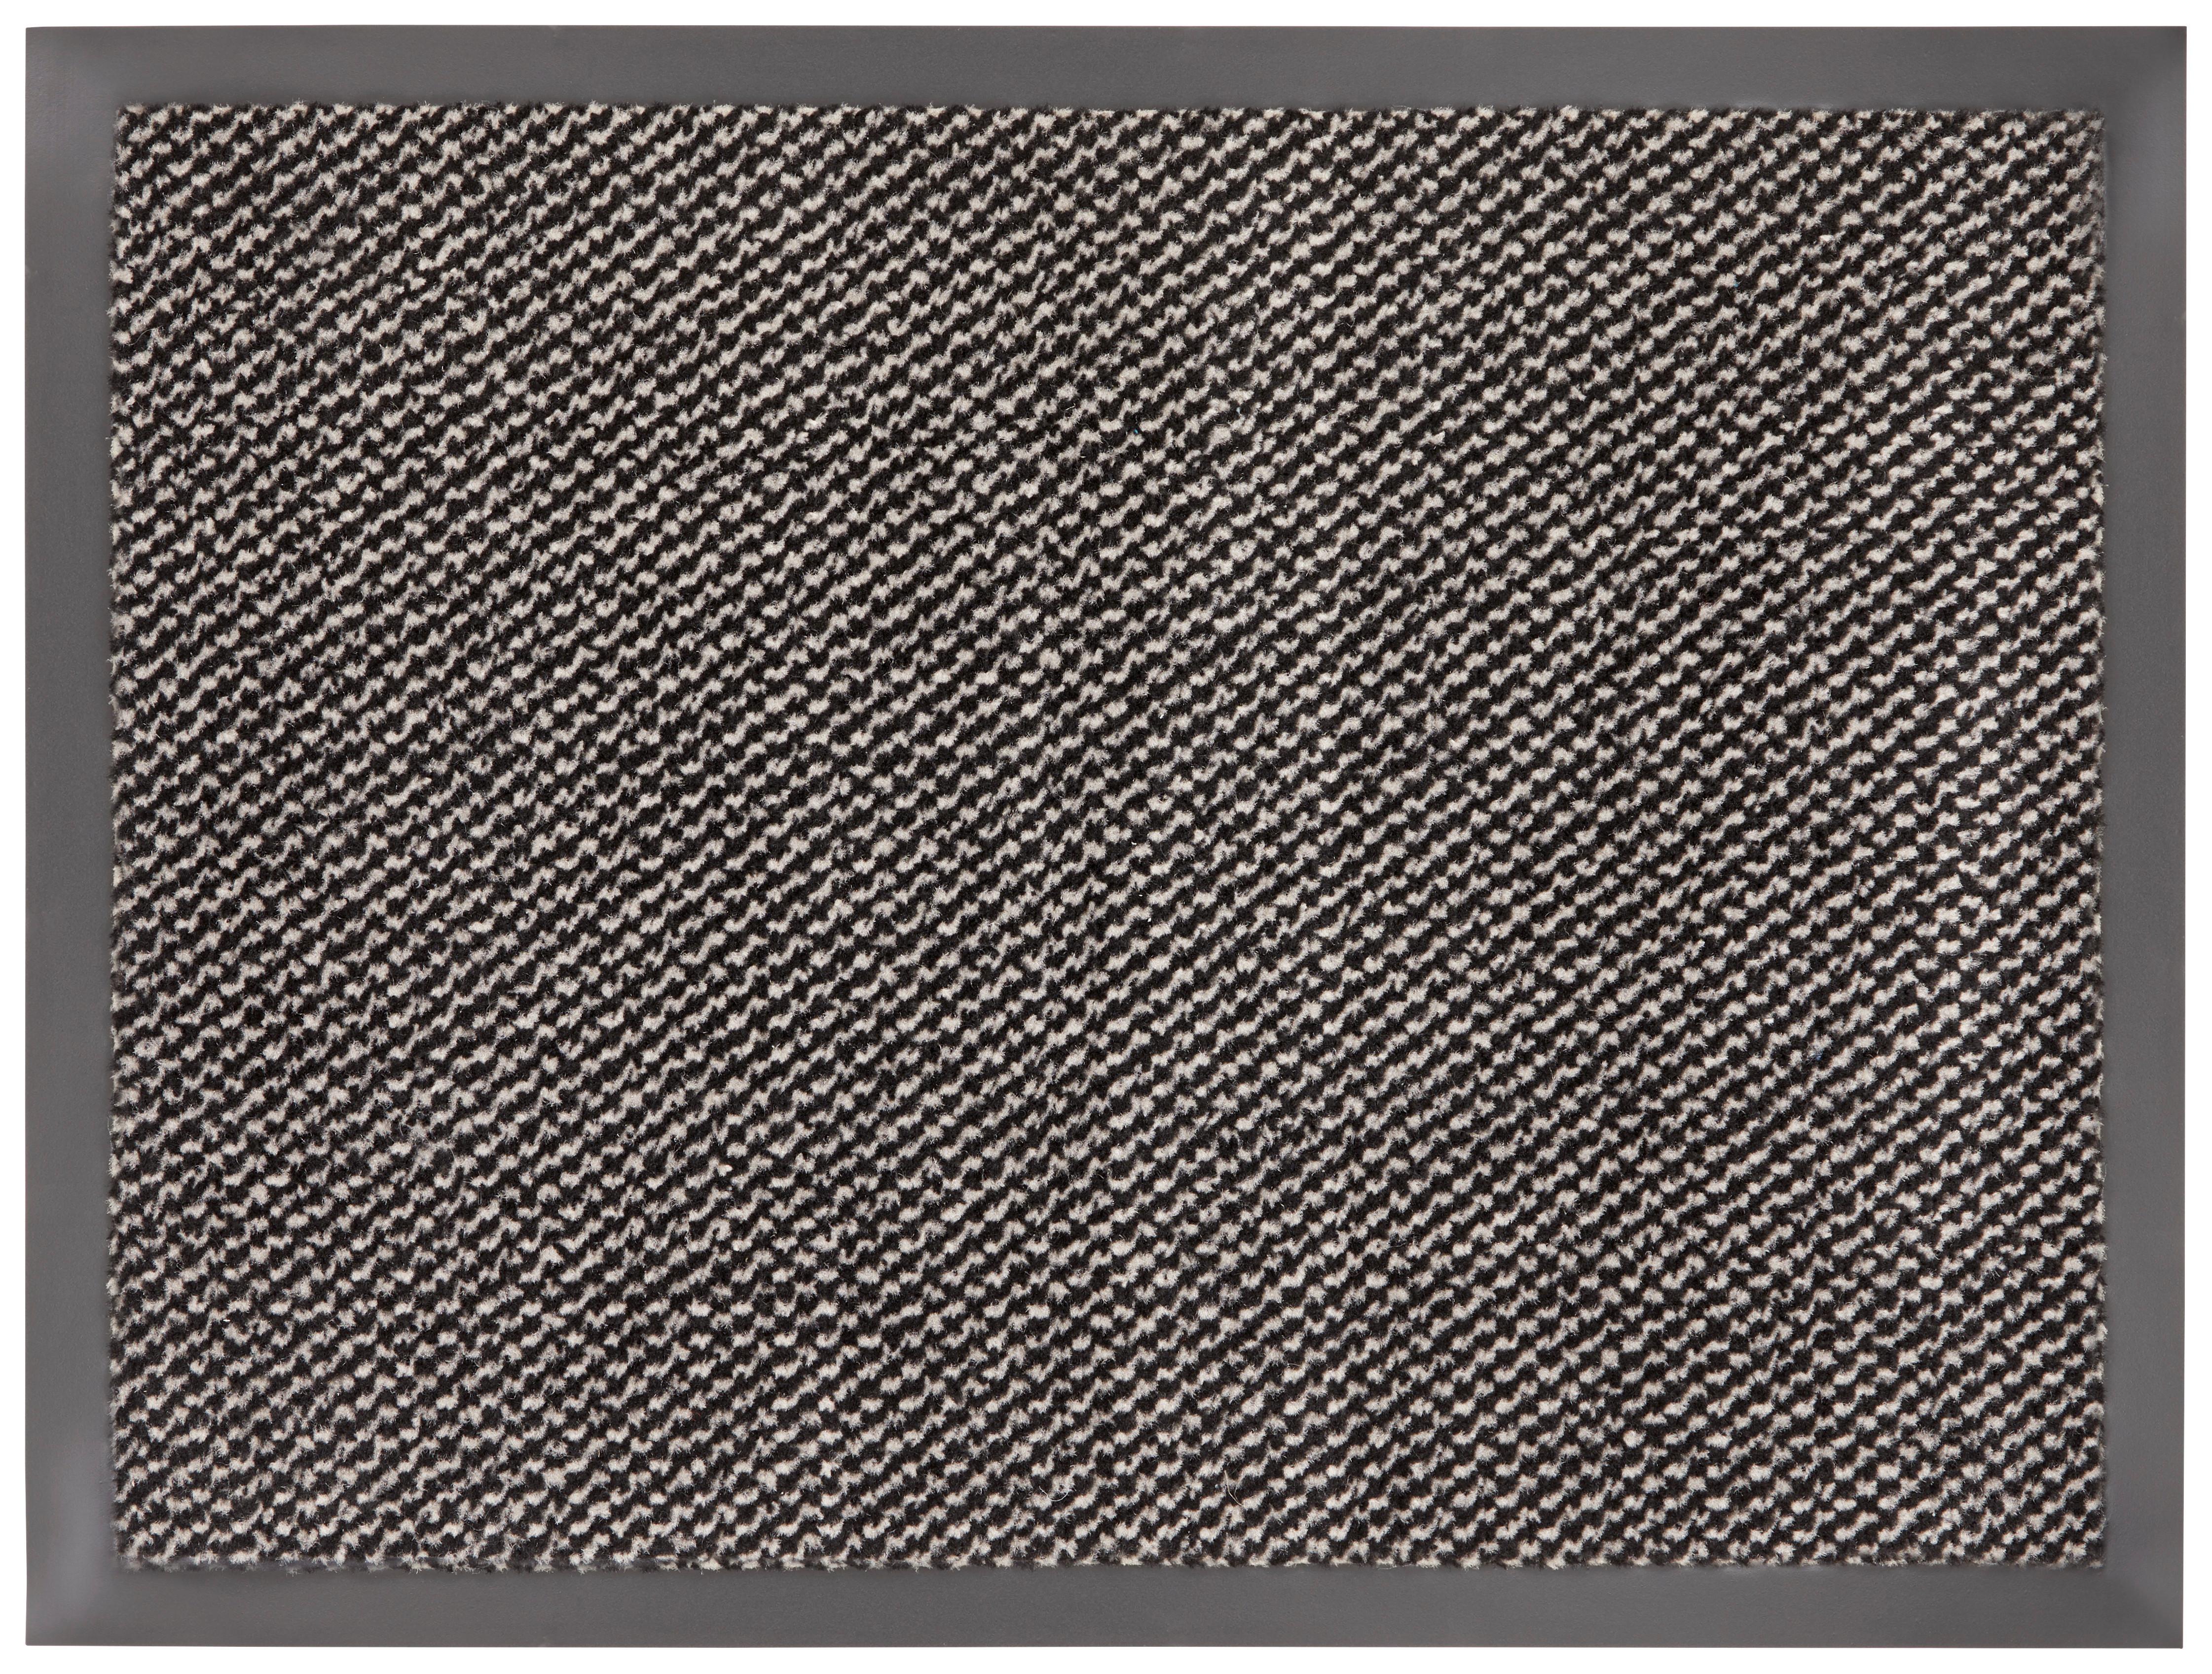 Dveřní Rohožka Hamptons 2, 60/80cm - černá/béžová, Konvenční, textil (60/80cm) - Modern Living